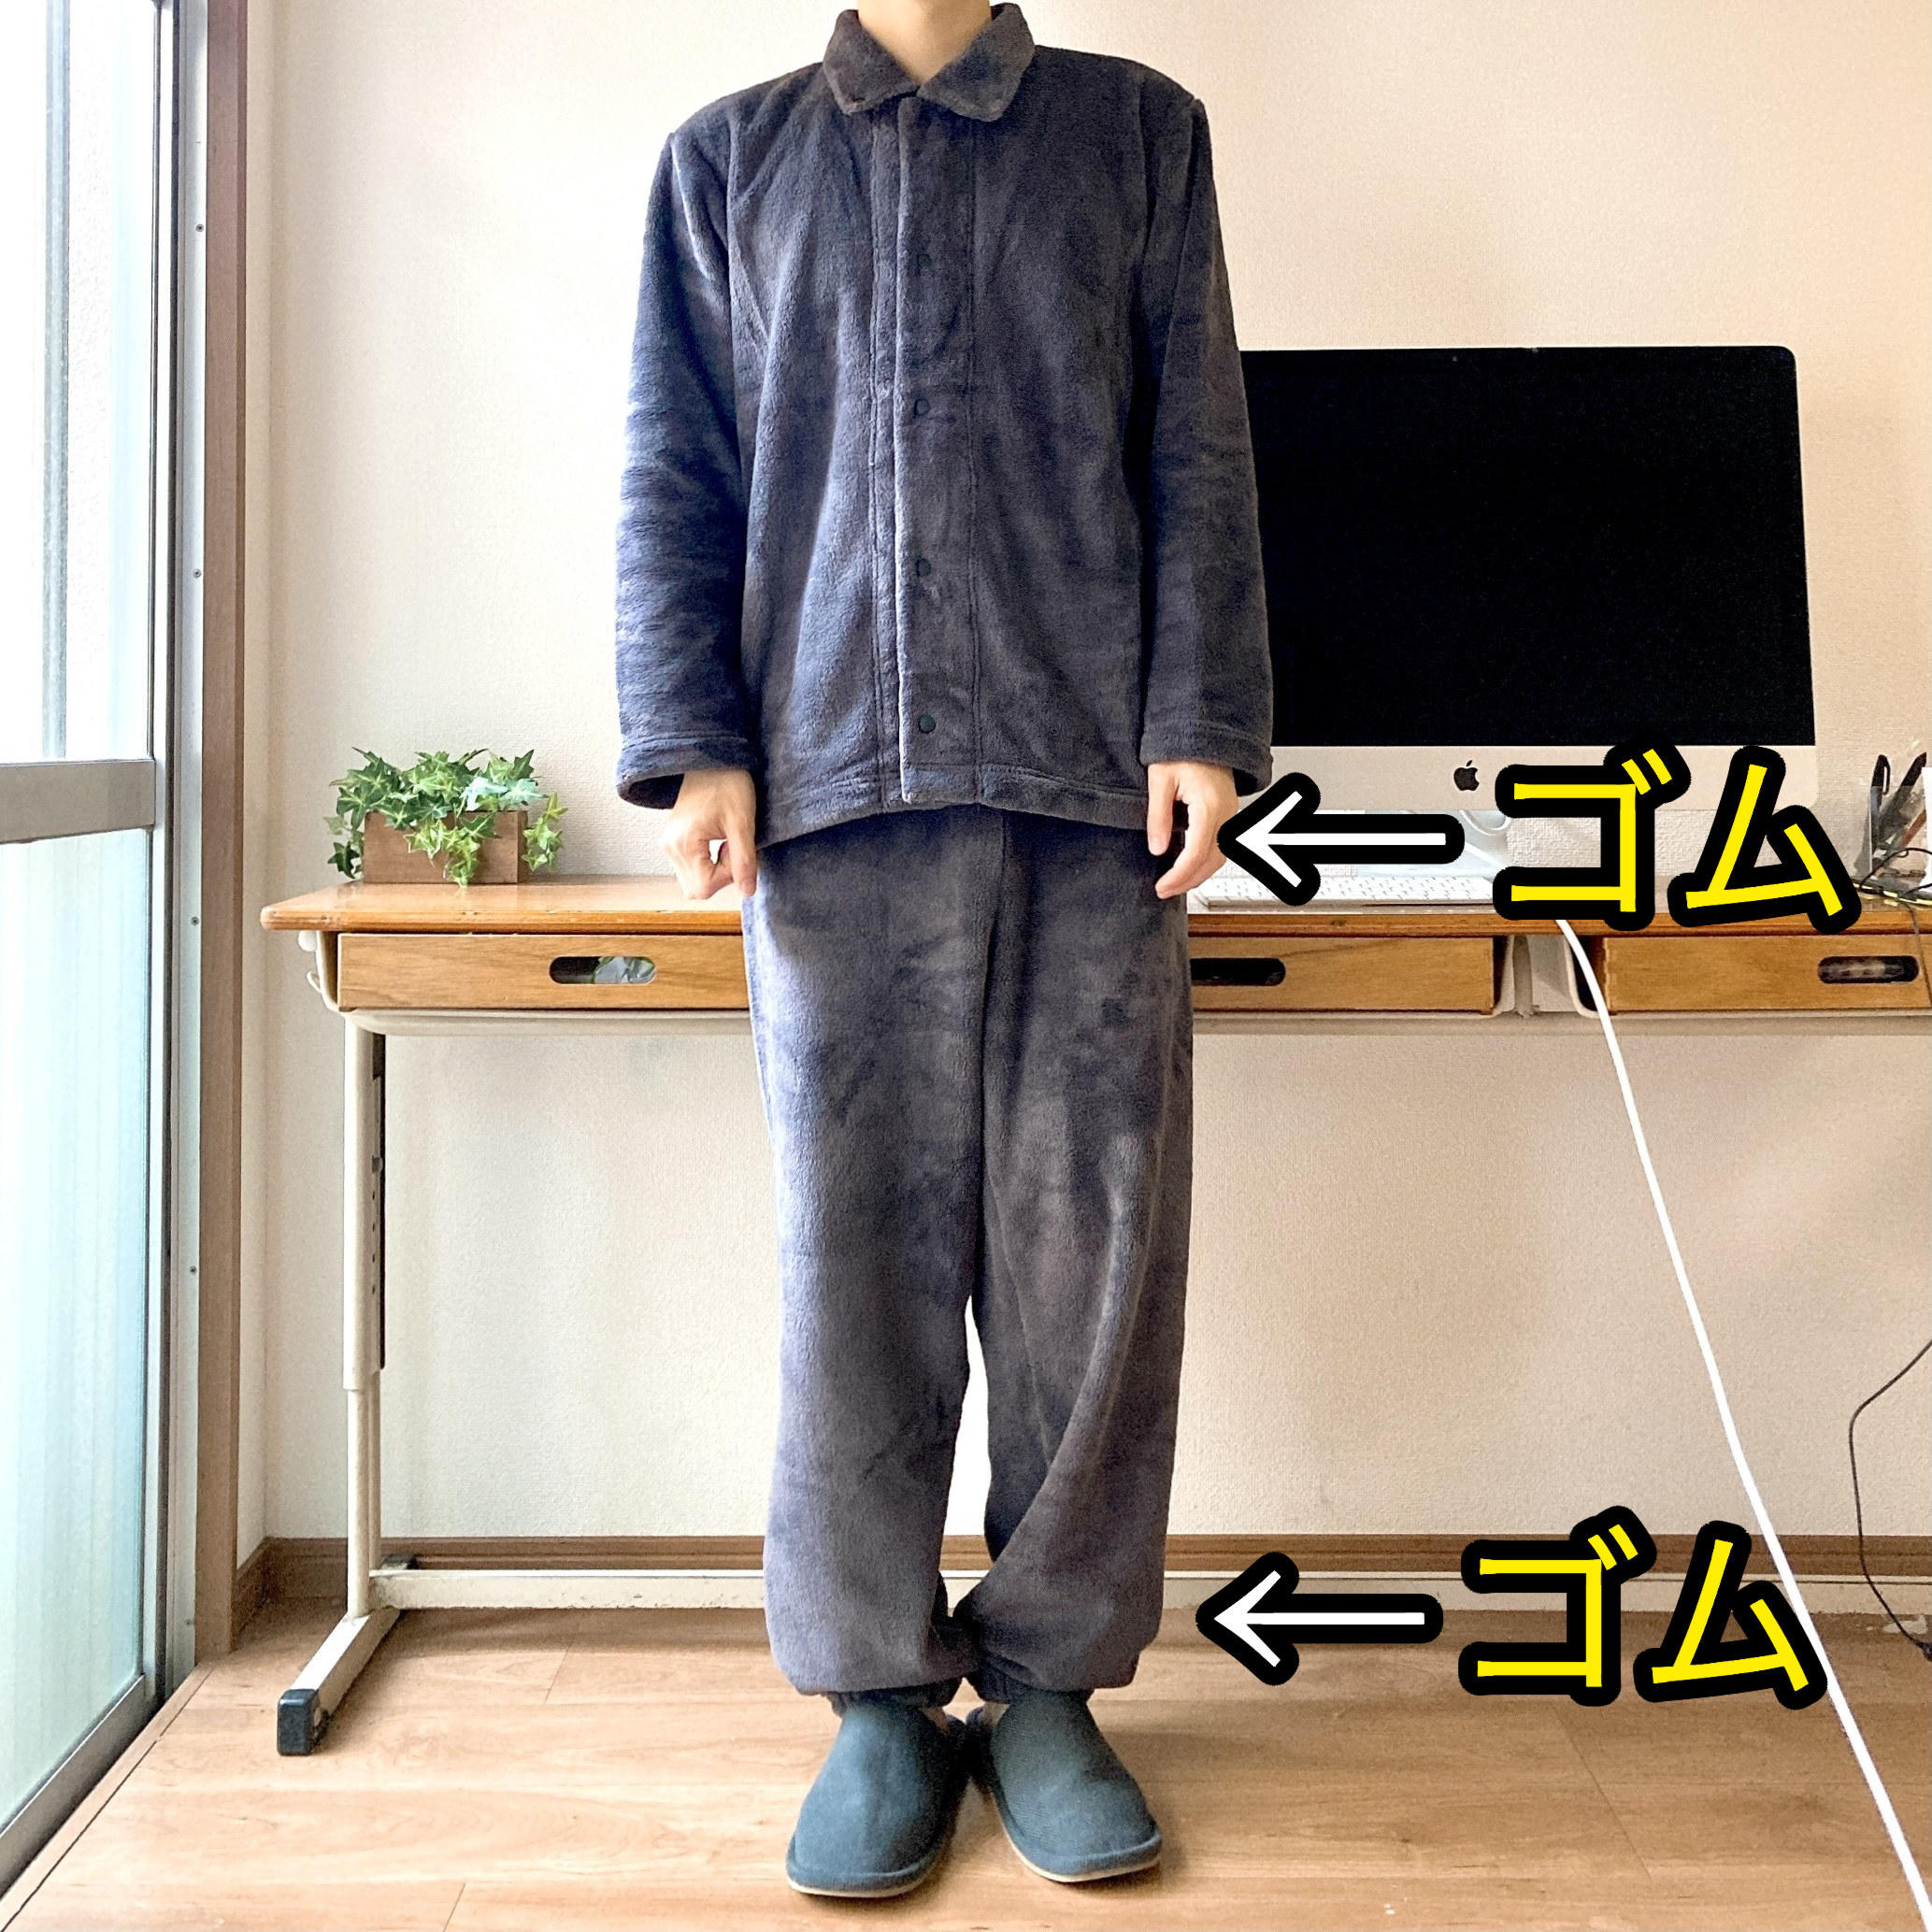 無印良品のオススメファッションアイテム「着る毛布 パジャマ」